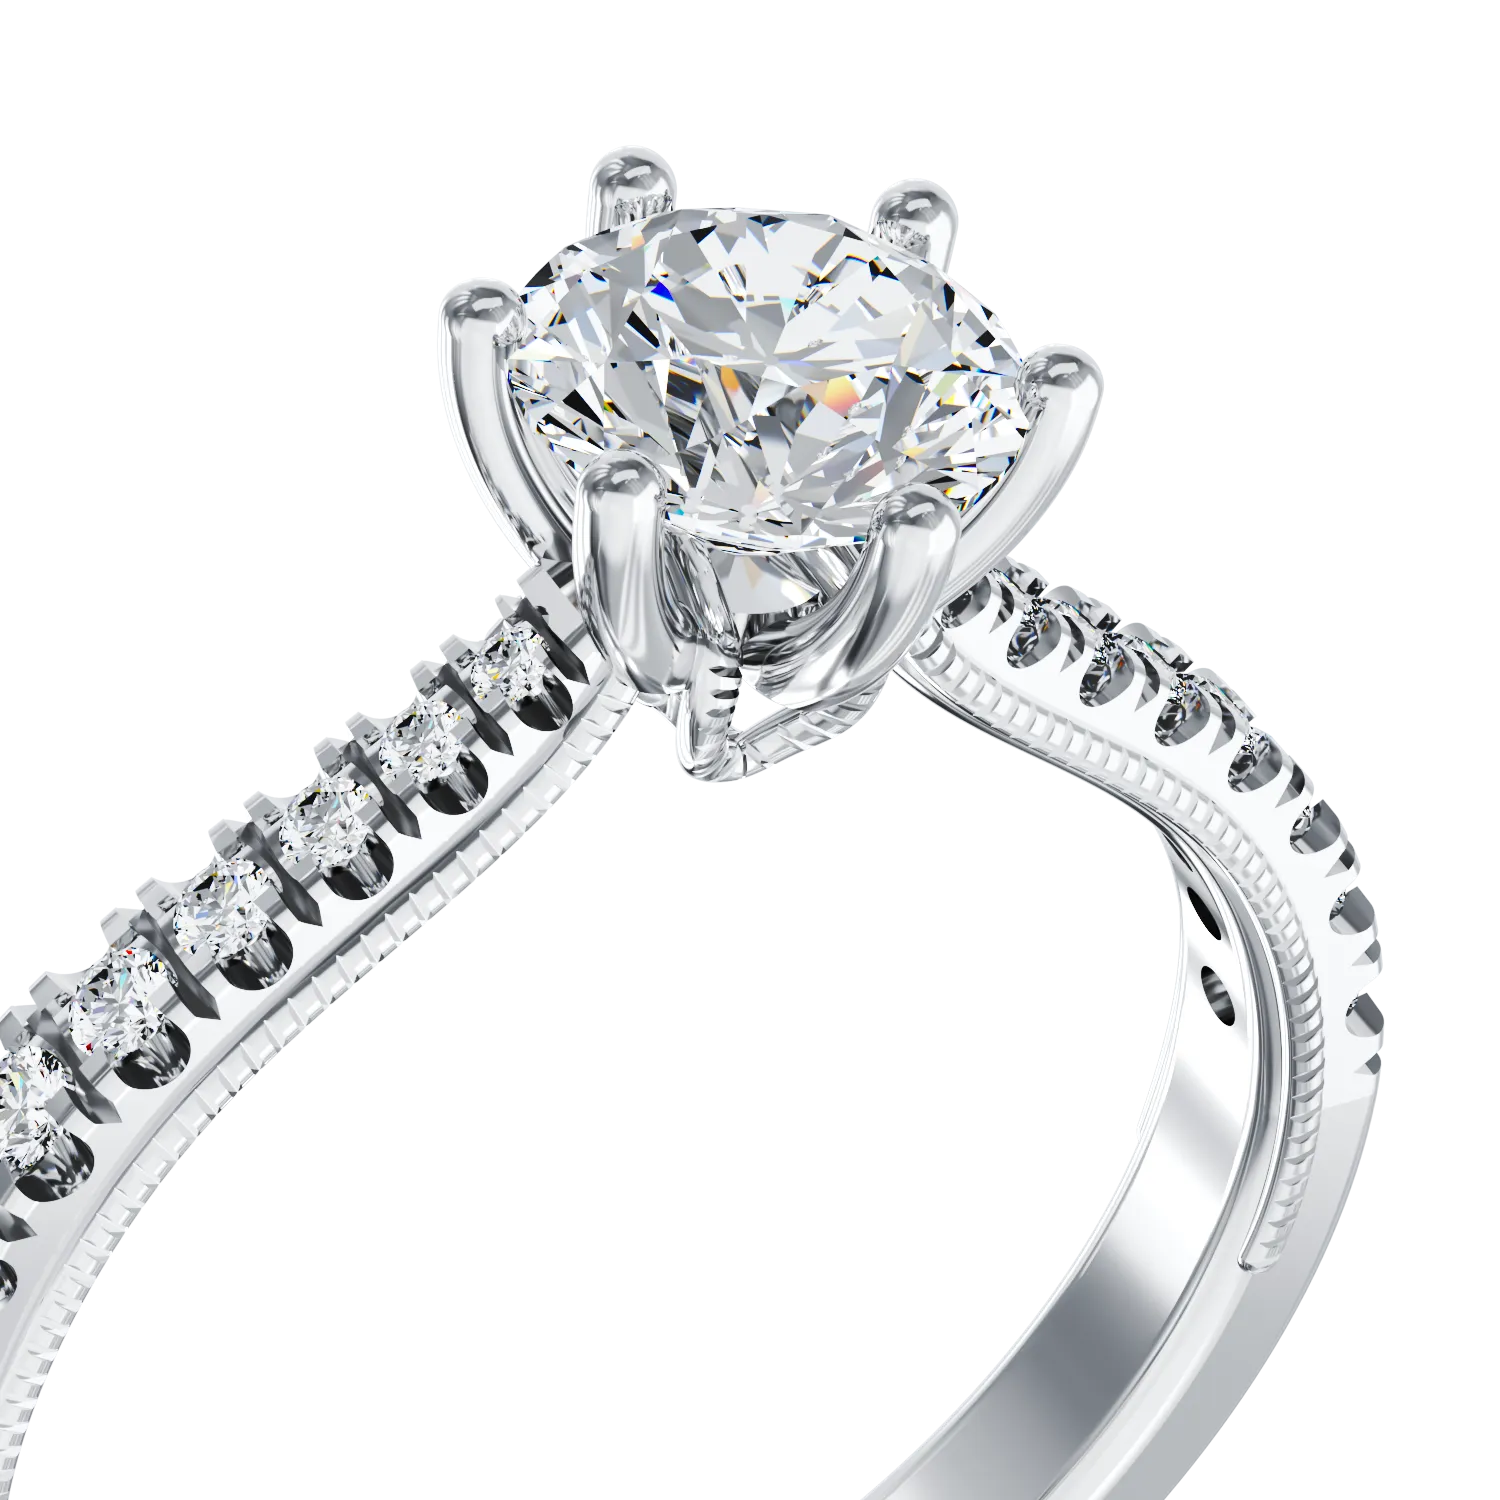 Eljegyzési gyűrű 18K-os fehér aranyból 0,4ct gyémánttal és 0,22ct gyémánttal